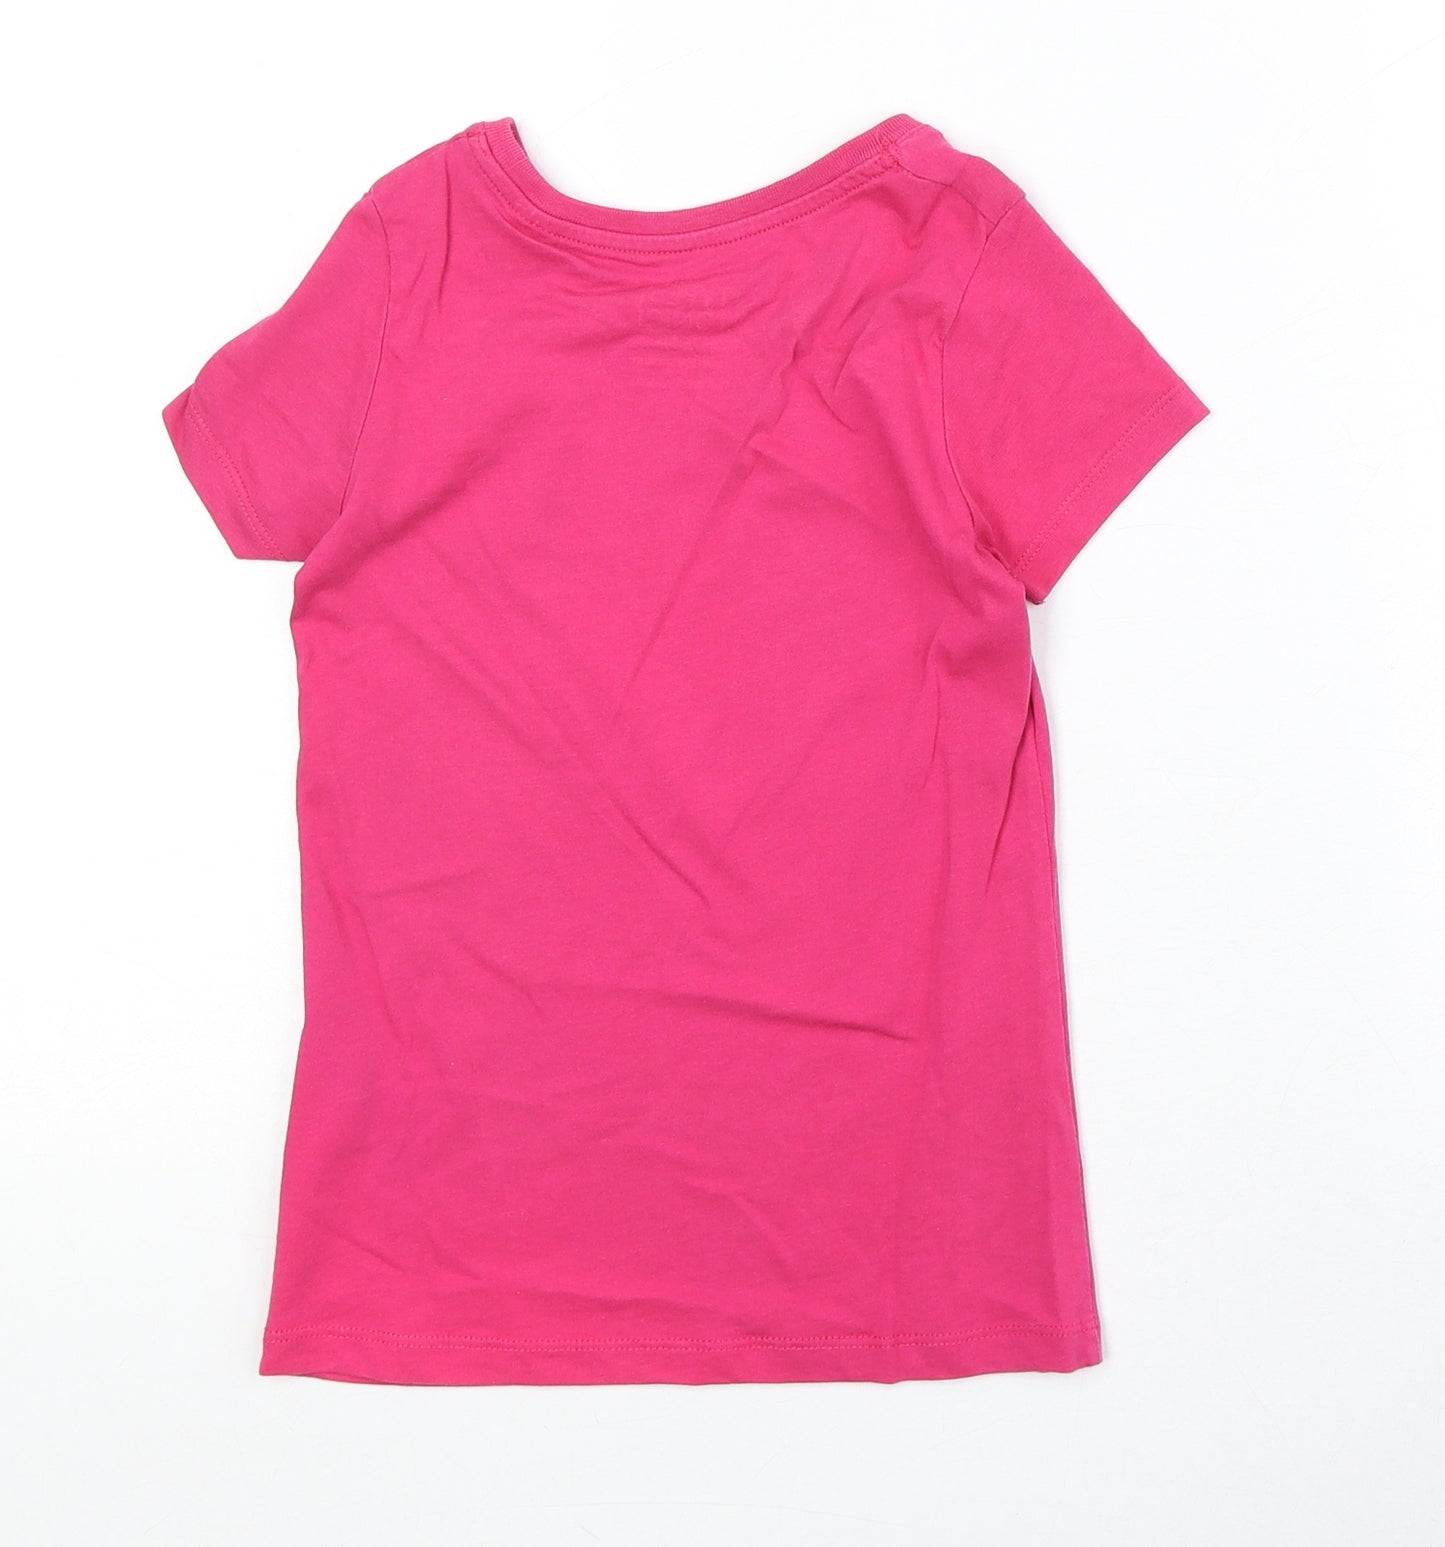 Stella Stanley Girls Pink 100% Cotton Basic T-Shirt Size 7-8 Years Round Neck Pullover